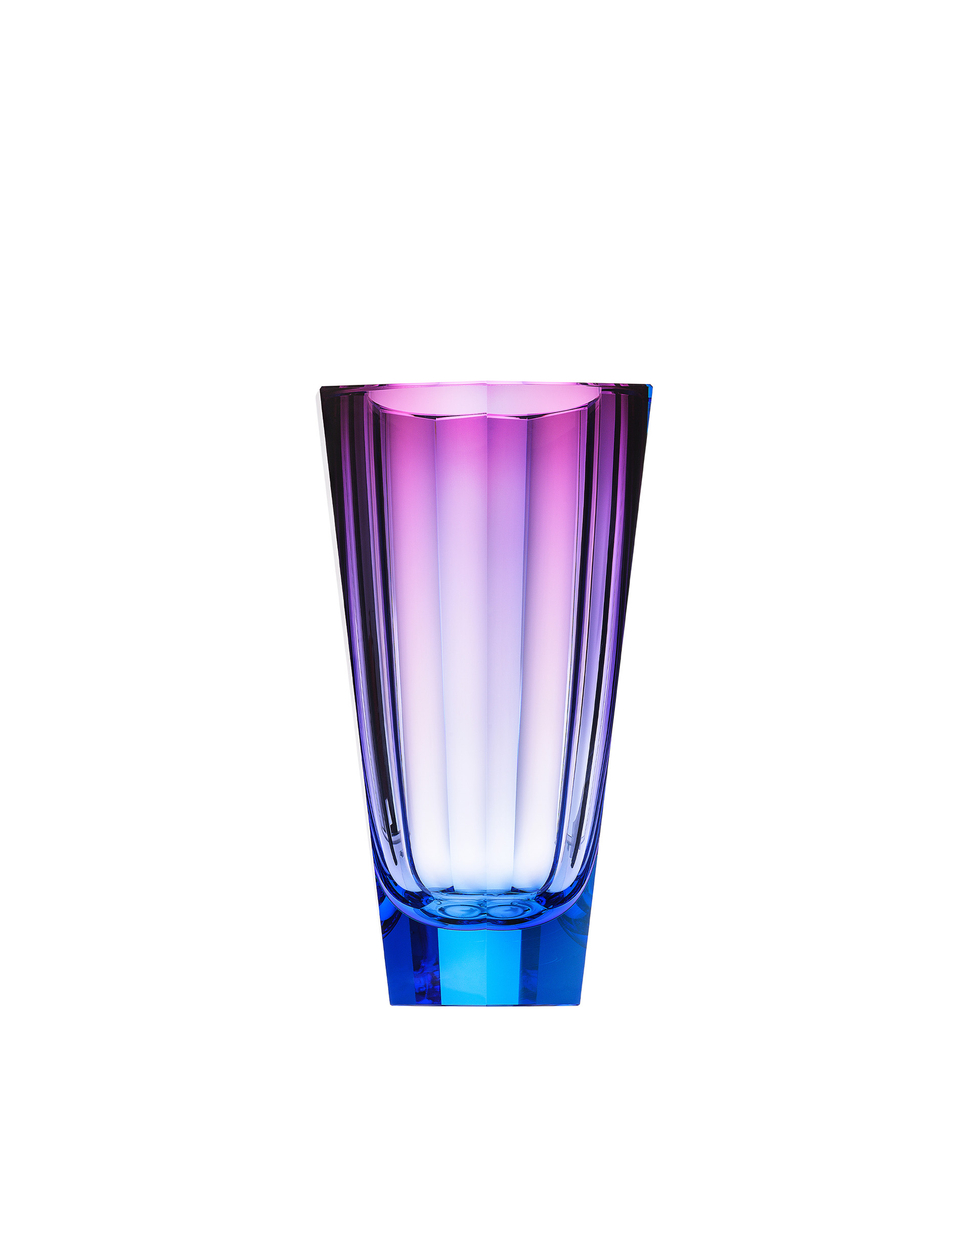 Purity vase, 22.5 cm